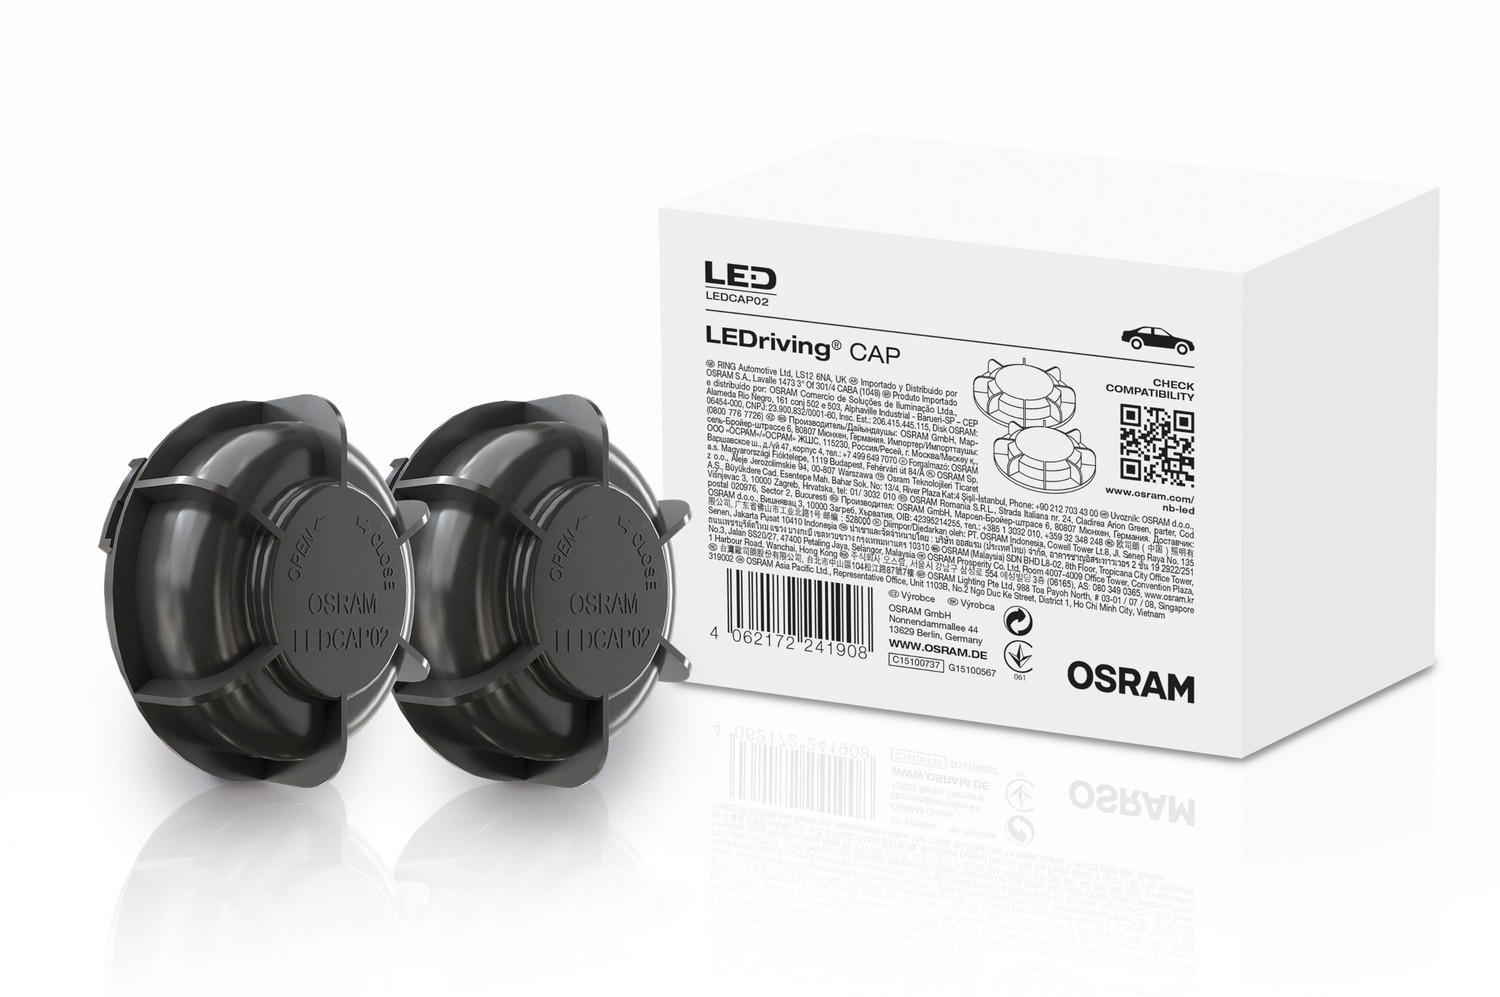 Obrázek produktu Osram LEDriving Cap LEDCAP02